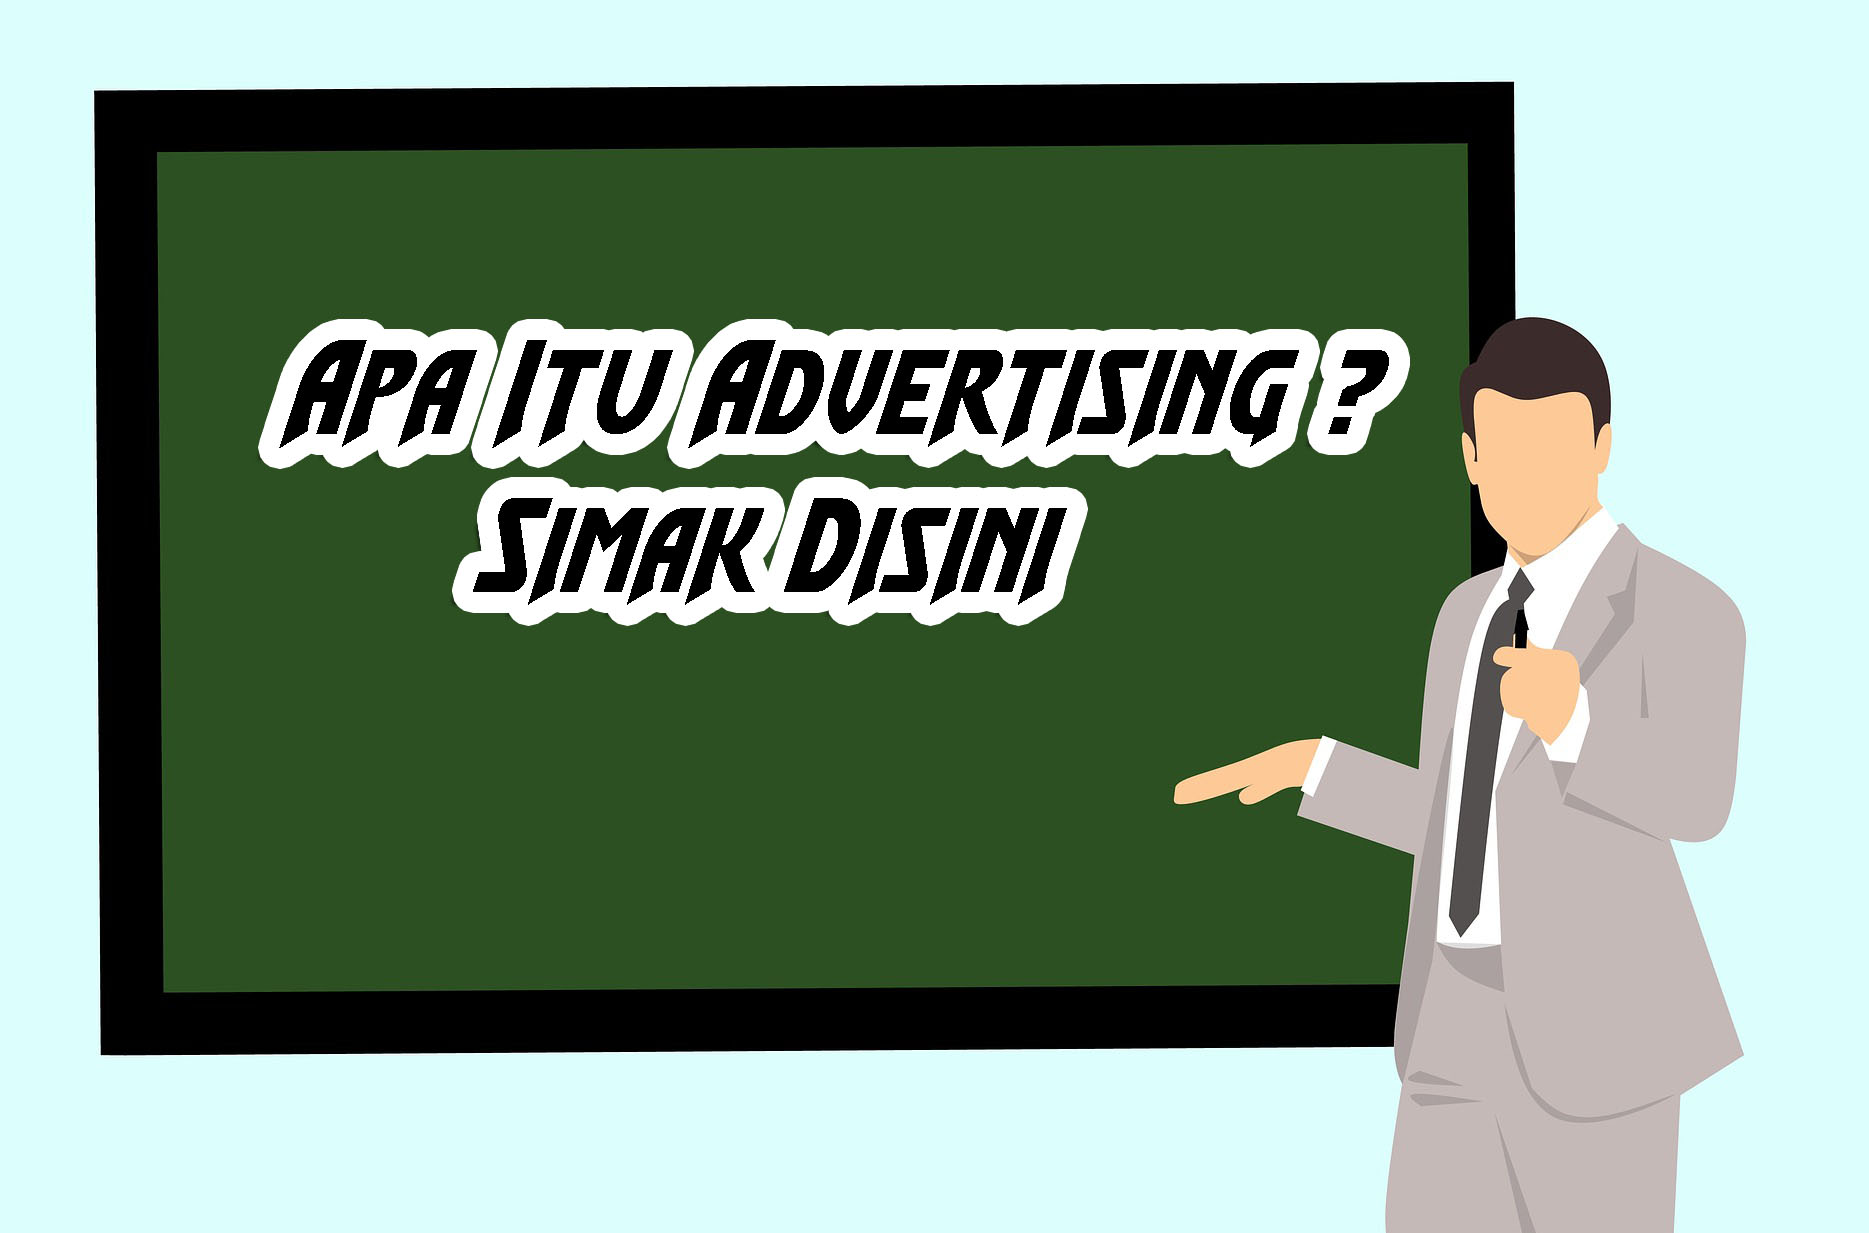 apa itu advertising research